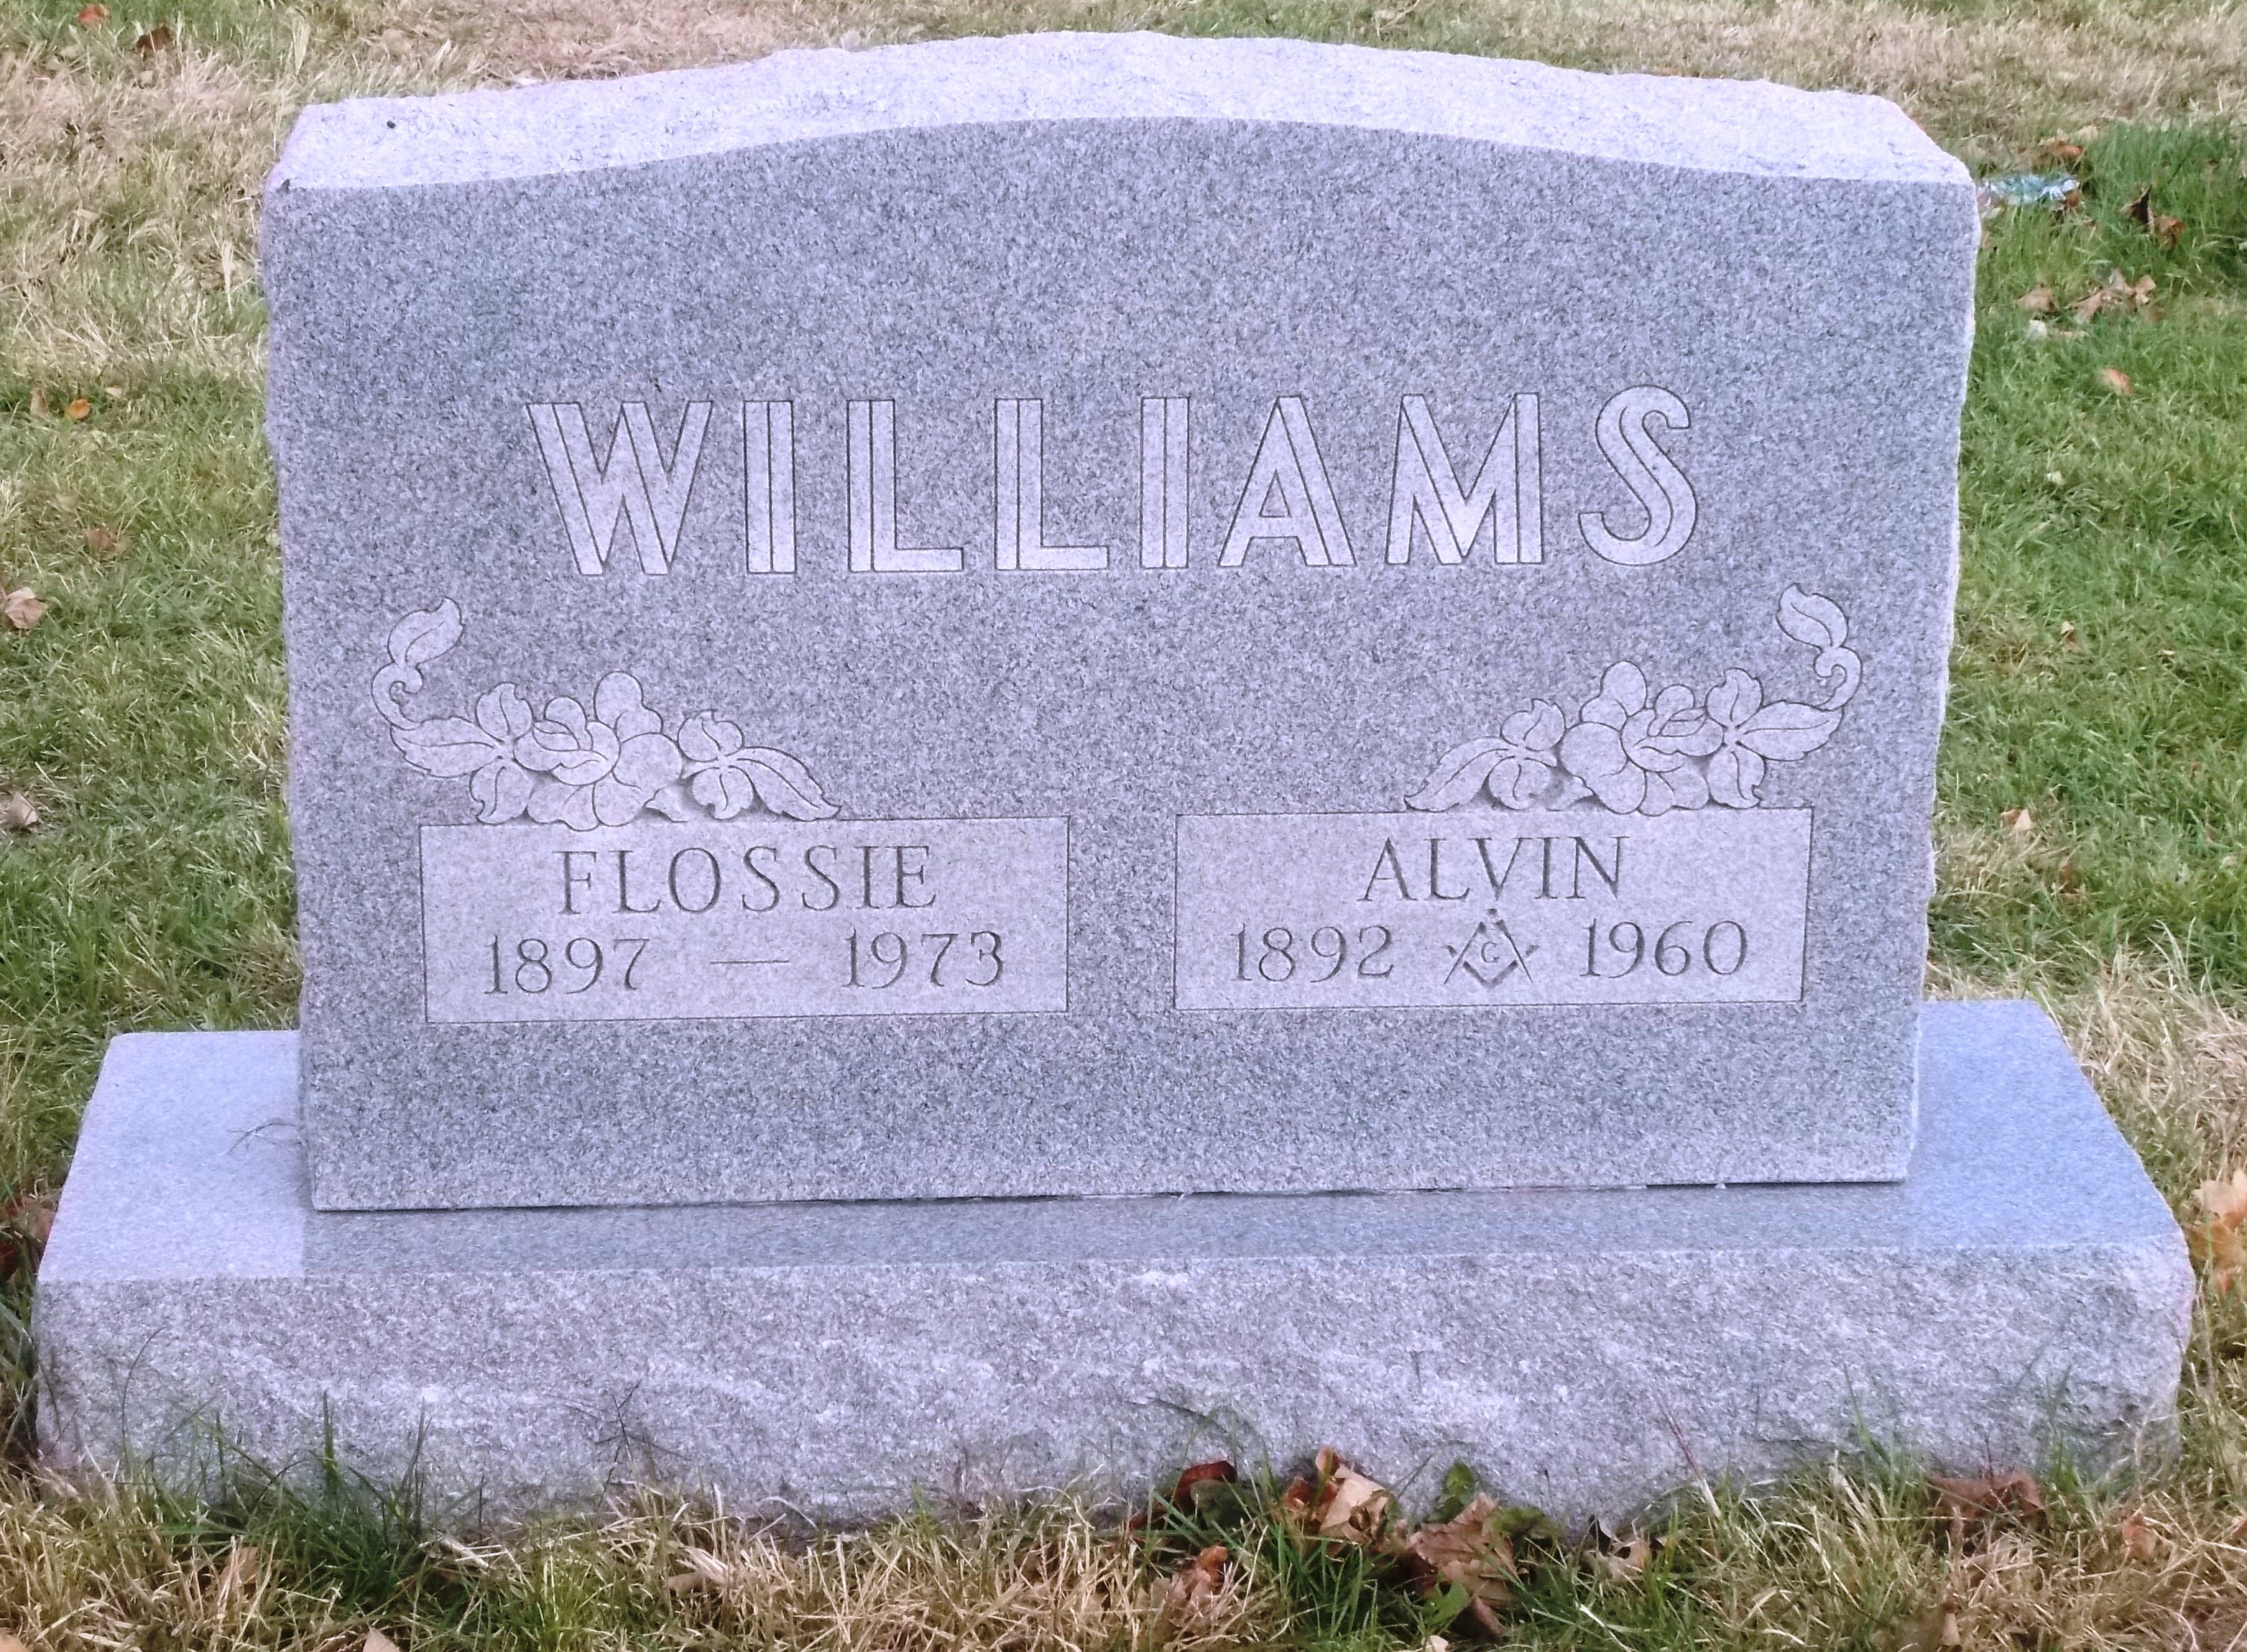 Alvin Williams